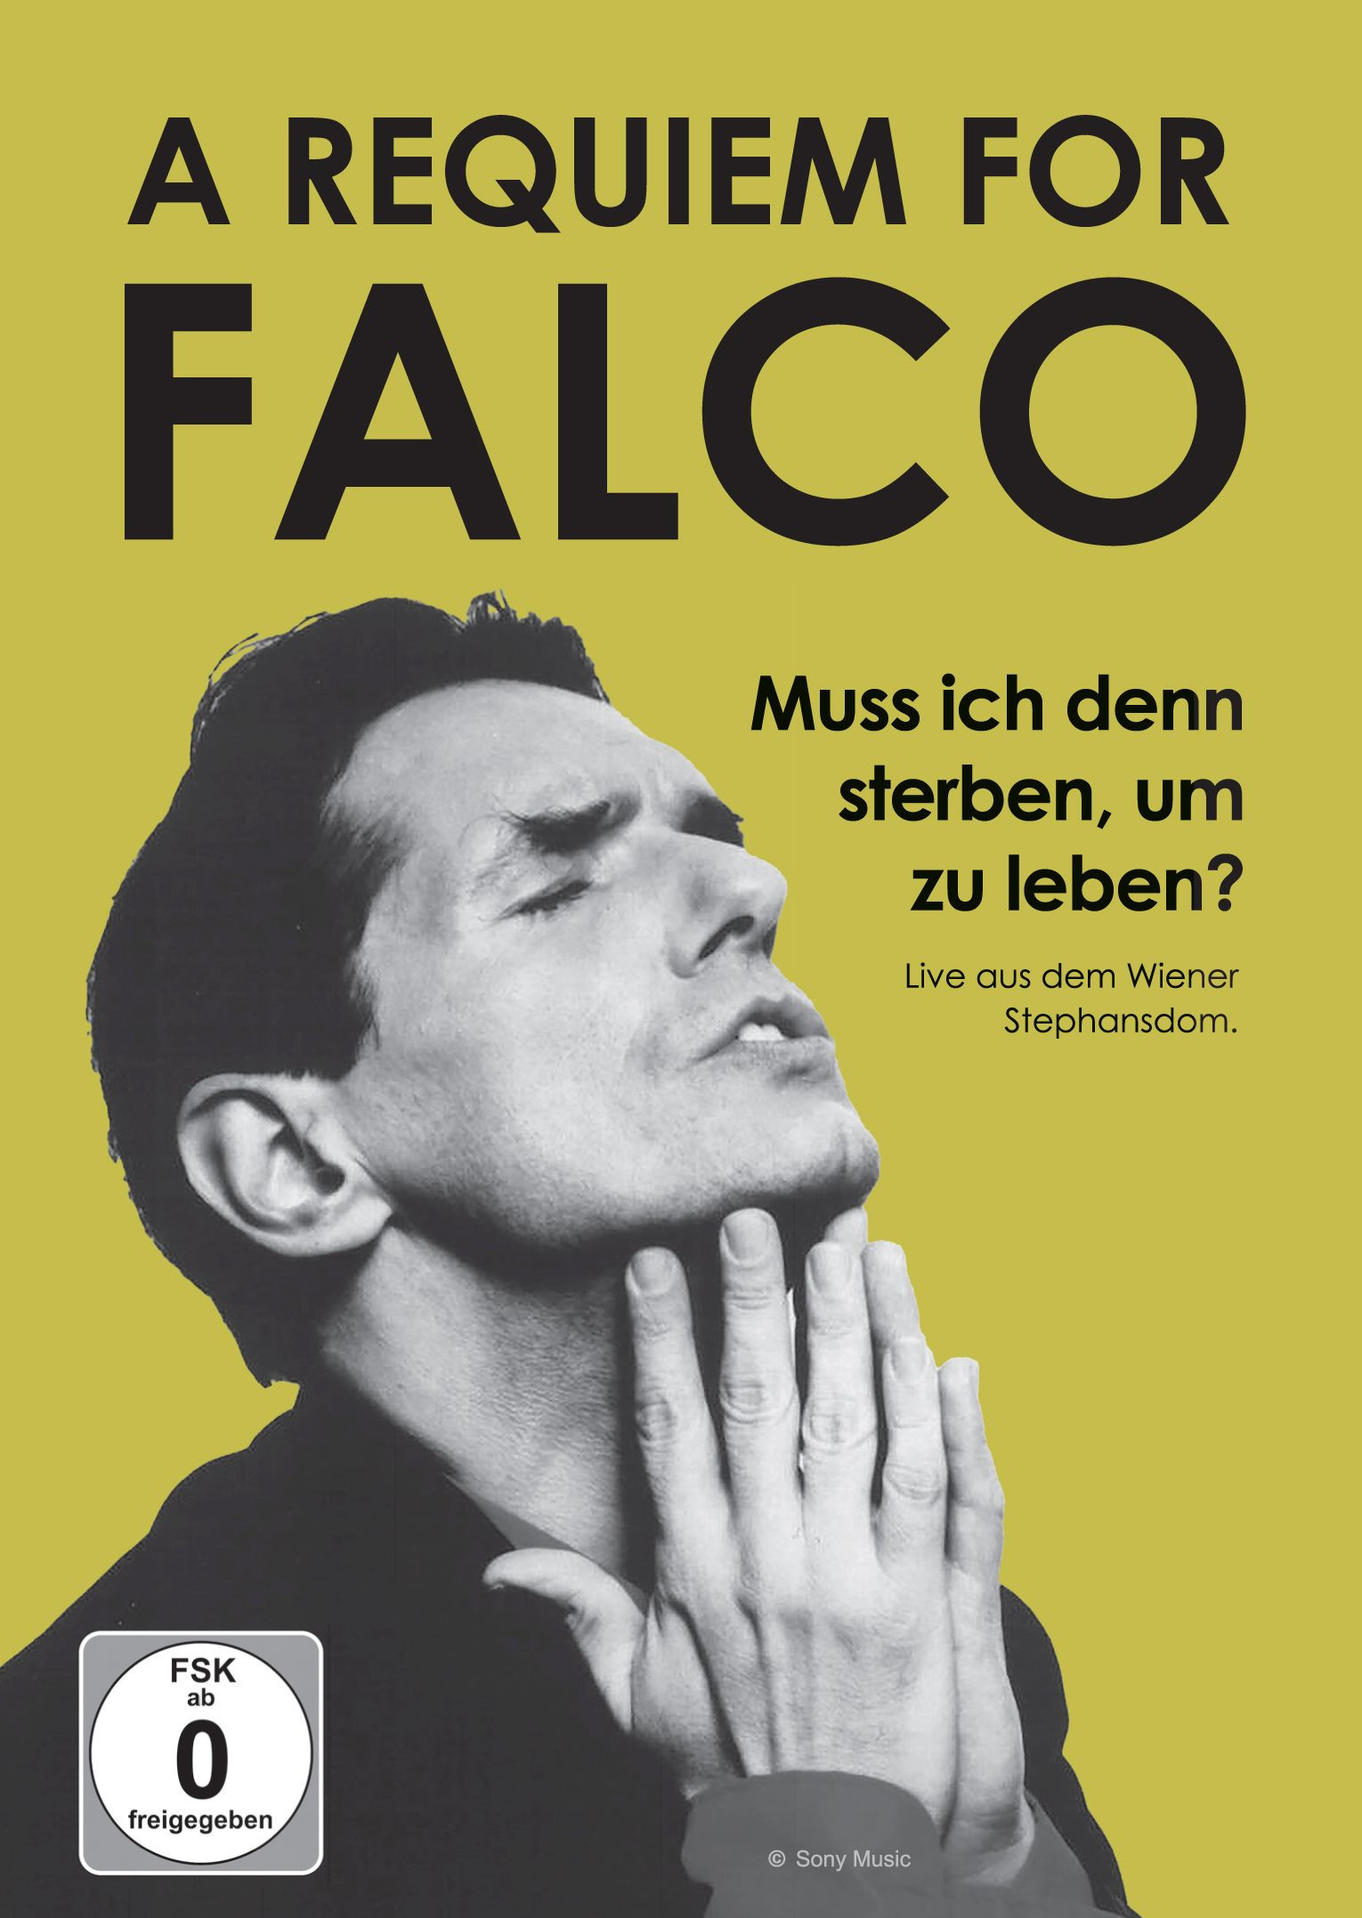 um denn zu leben? Muss for ich - A sterben, Falco: Requiem - (DVD) VARIOUS